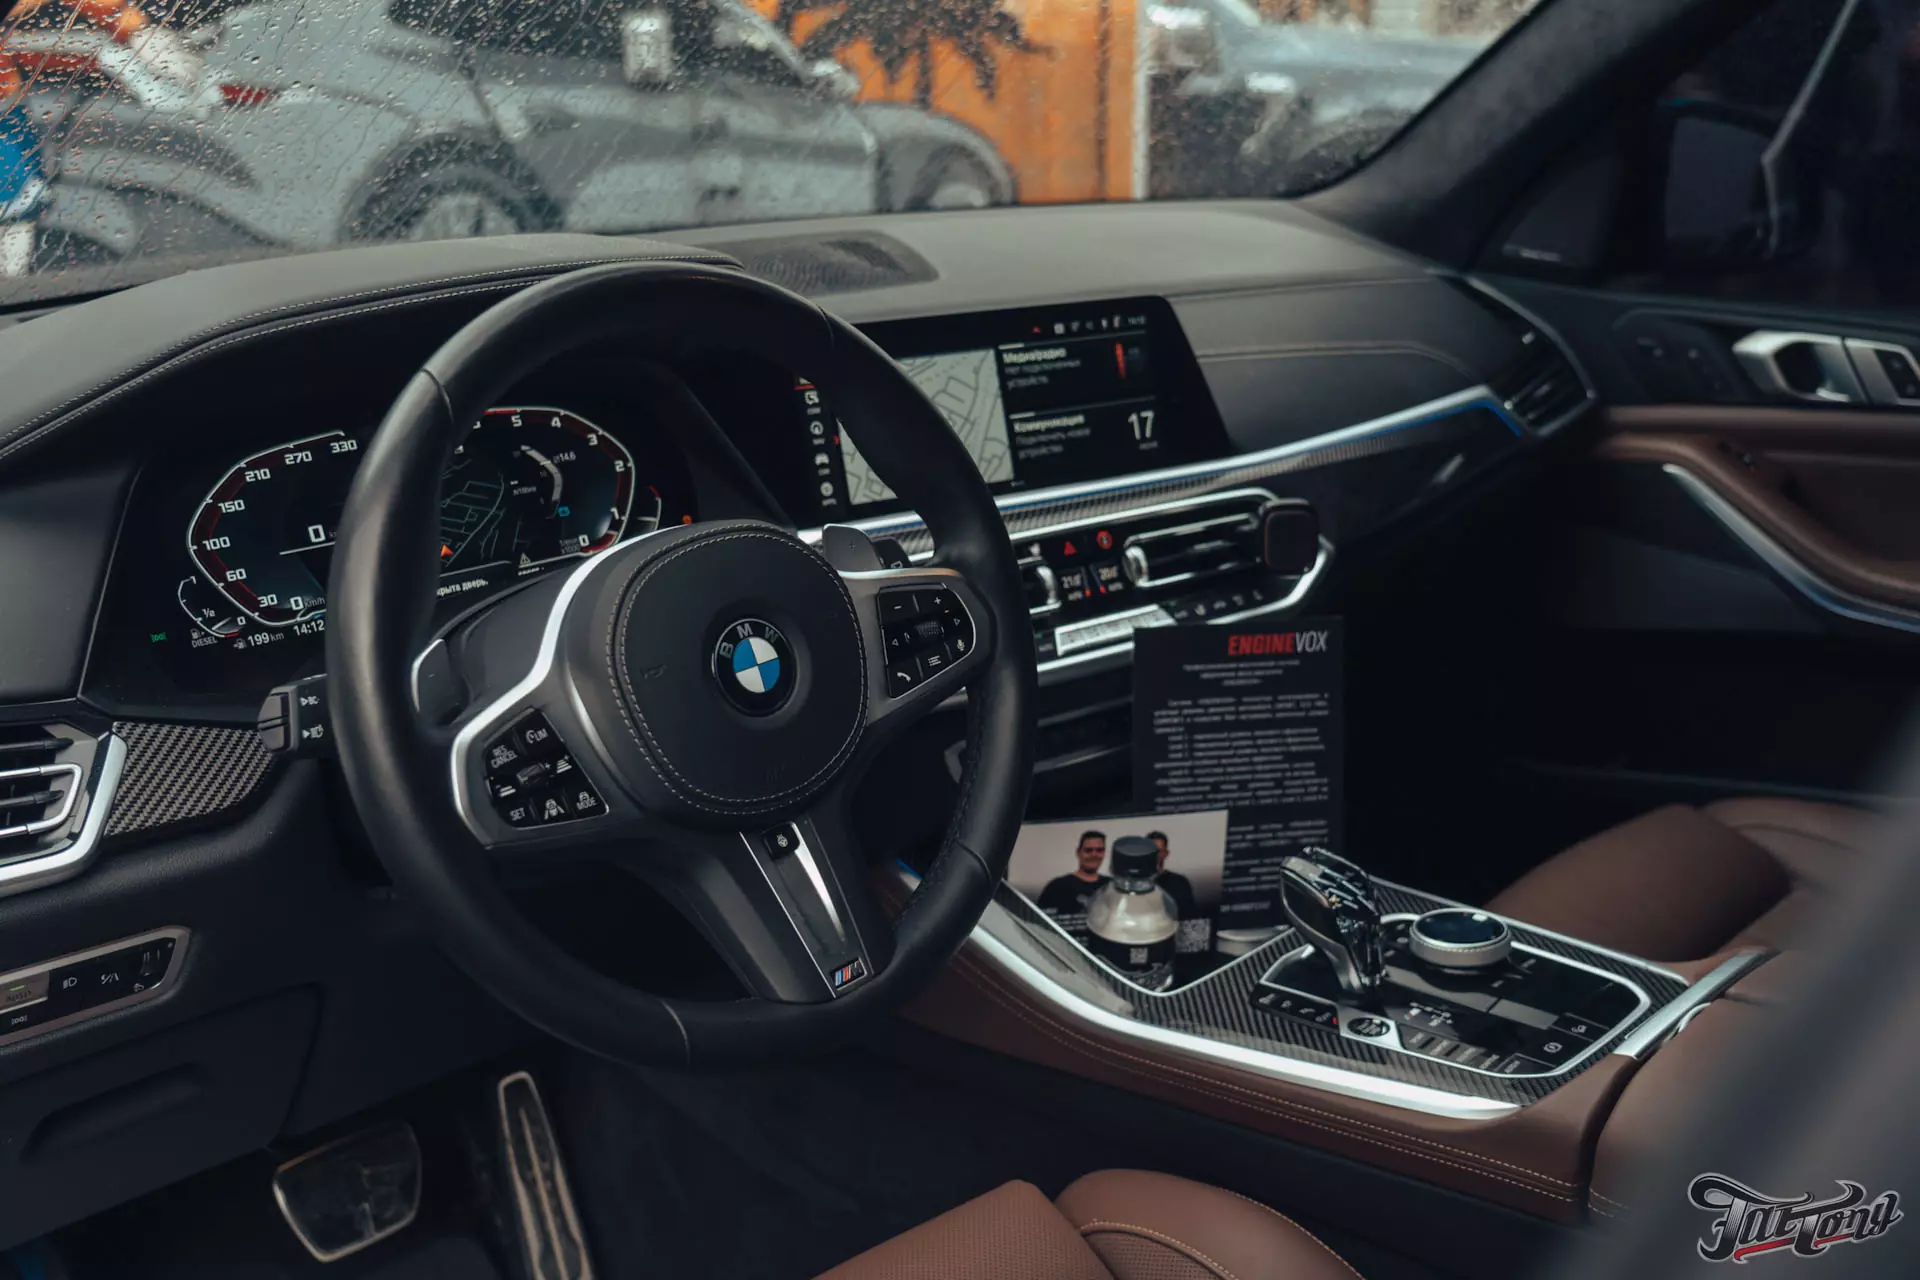 BMW X5. Установили профессиональный активный выхлоп ENGINEVOX